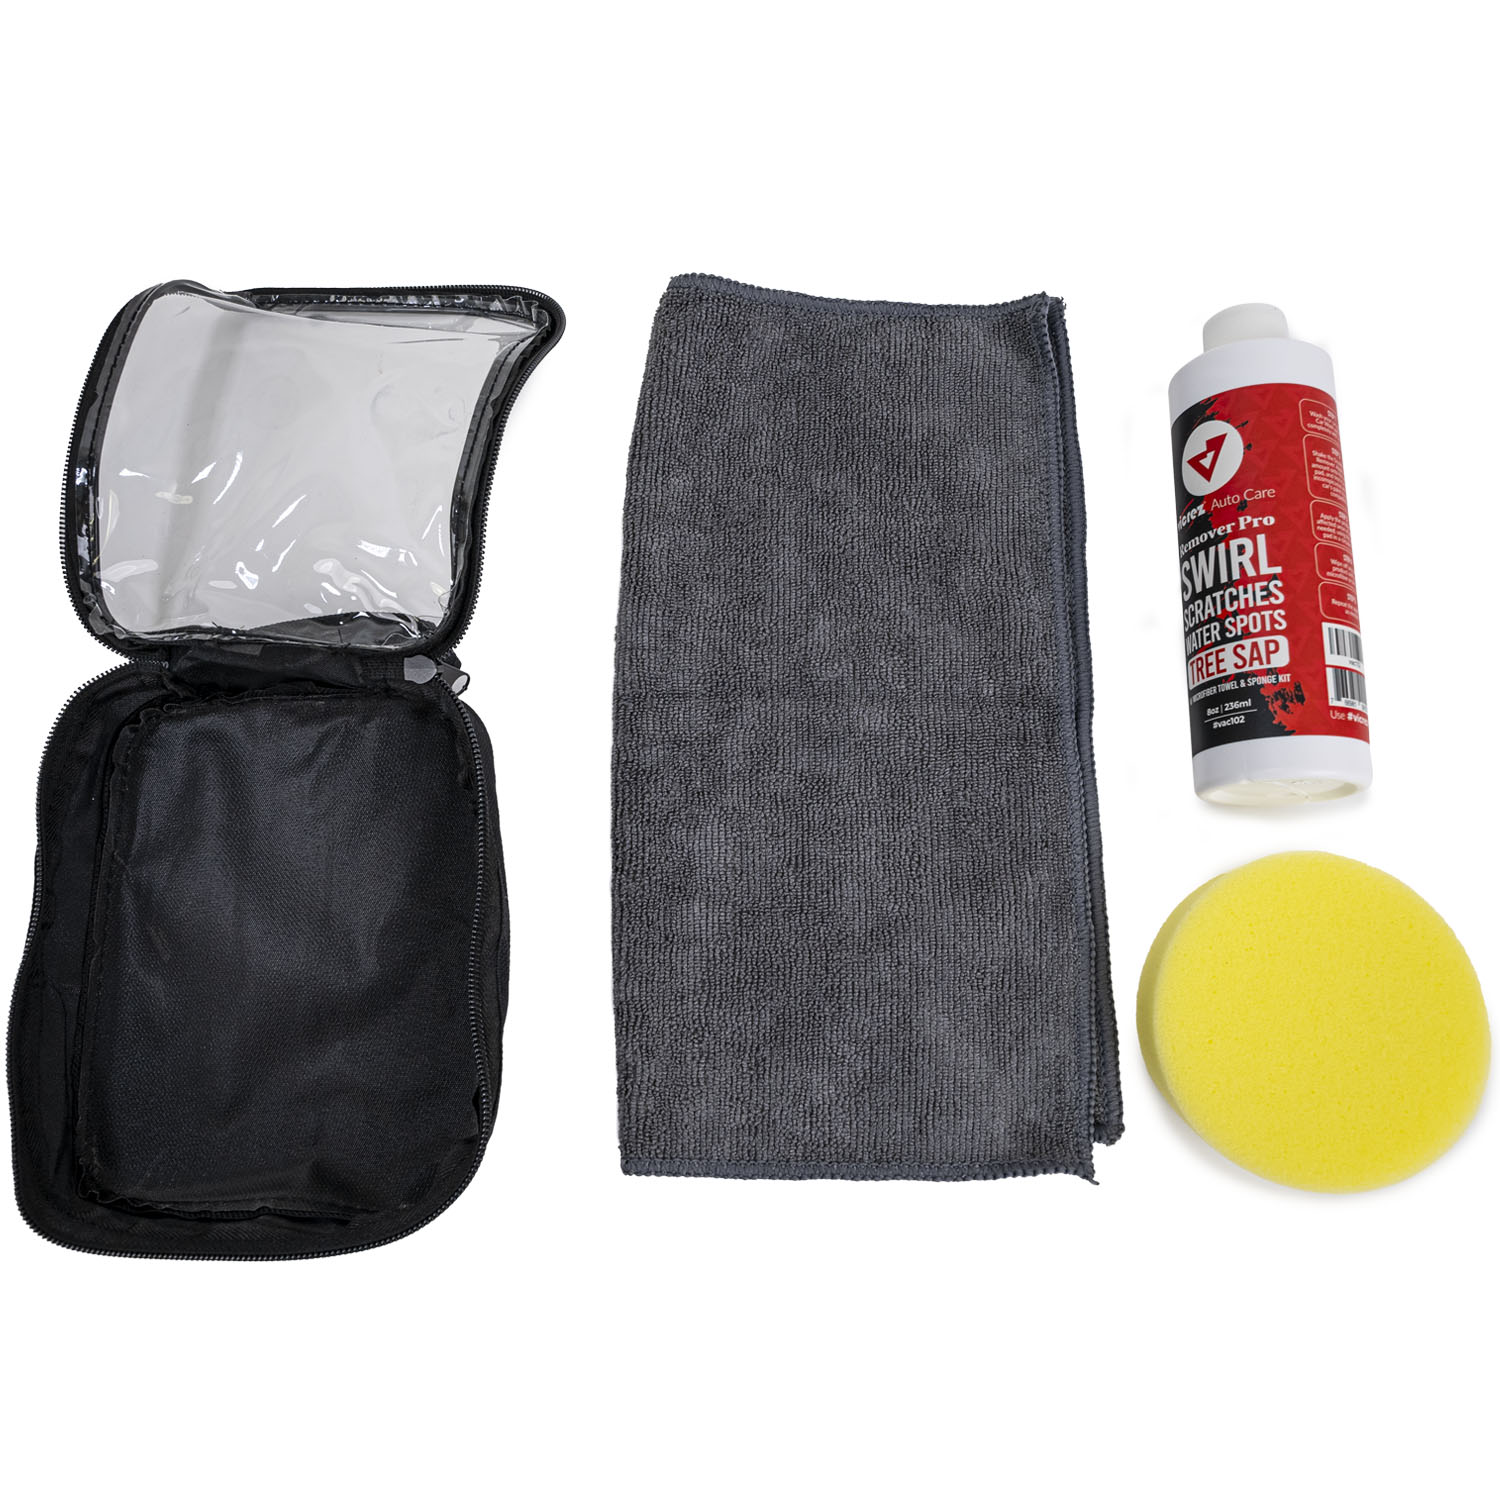 Vicrez Auto Care vac108 Foam Pro Snow Storm Wash Soap w/ Sponger,  Microfiber Towel and Gloves